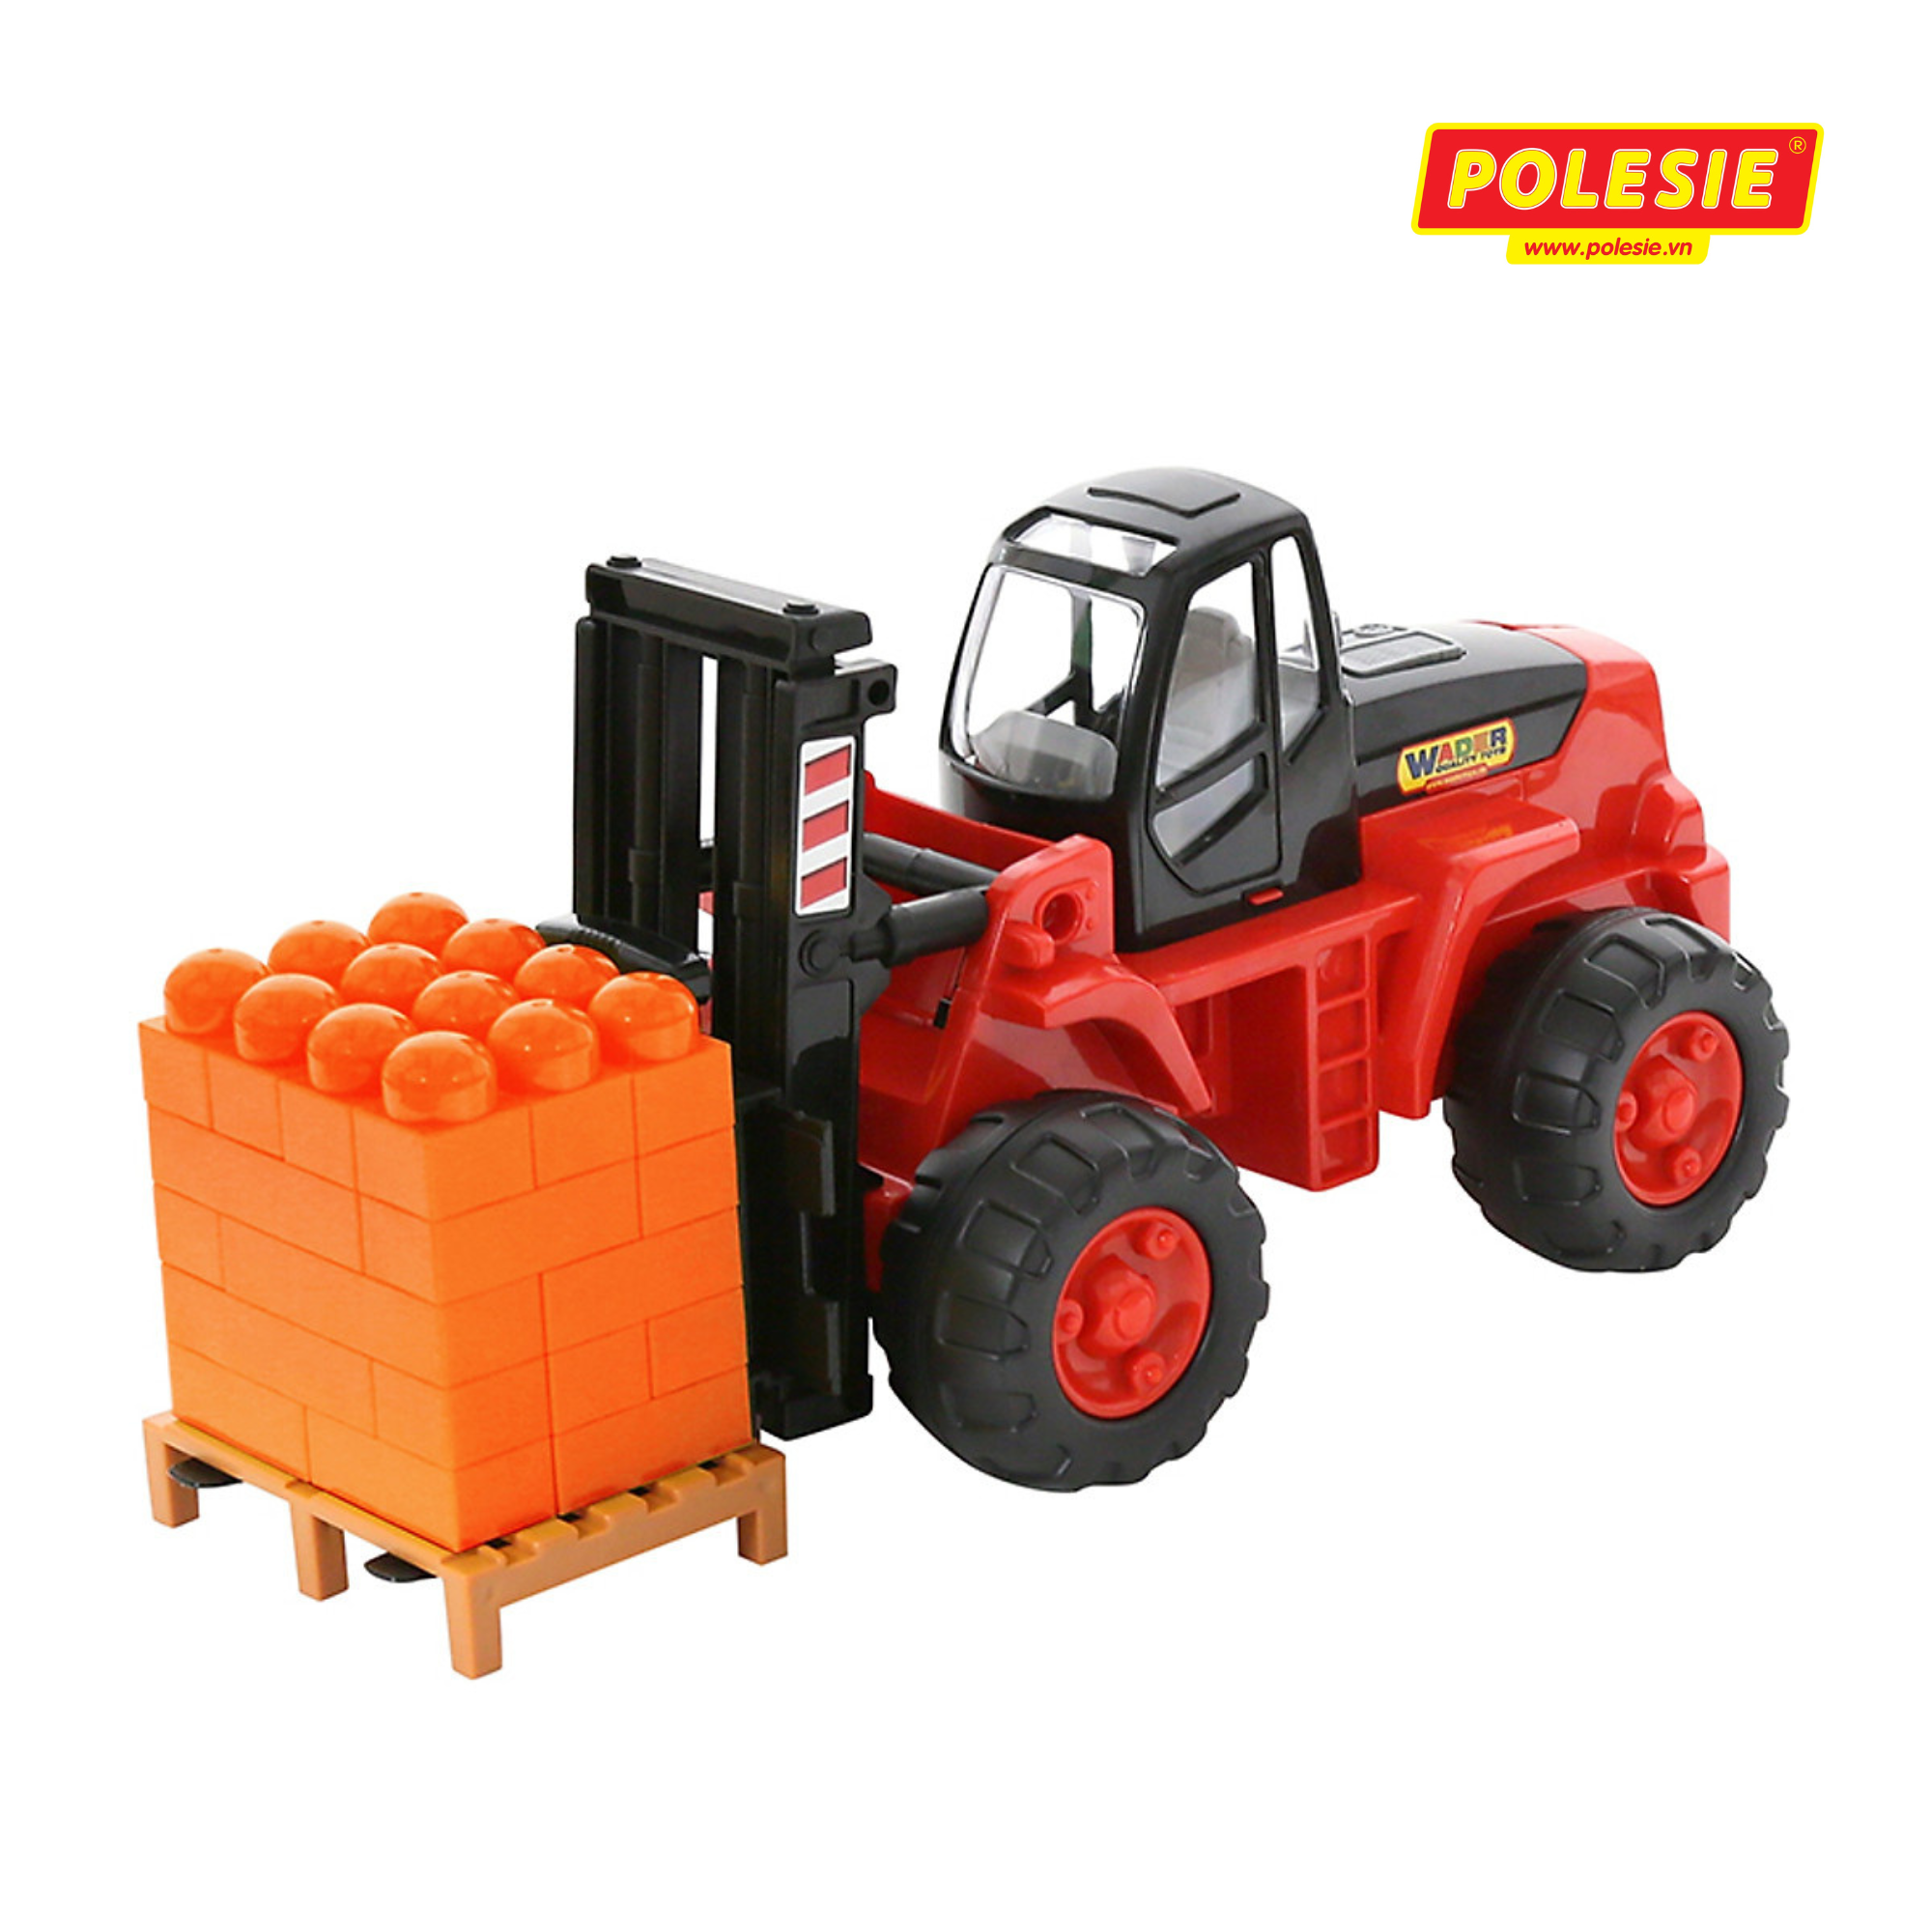 Xe nâng hàng đồ chơi PowerTruck kèm bộ xếp hình – Polesie Toys